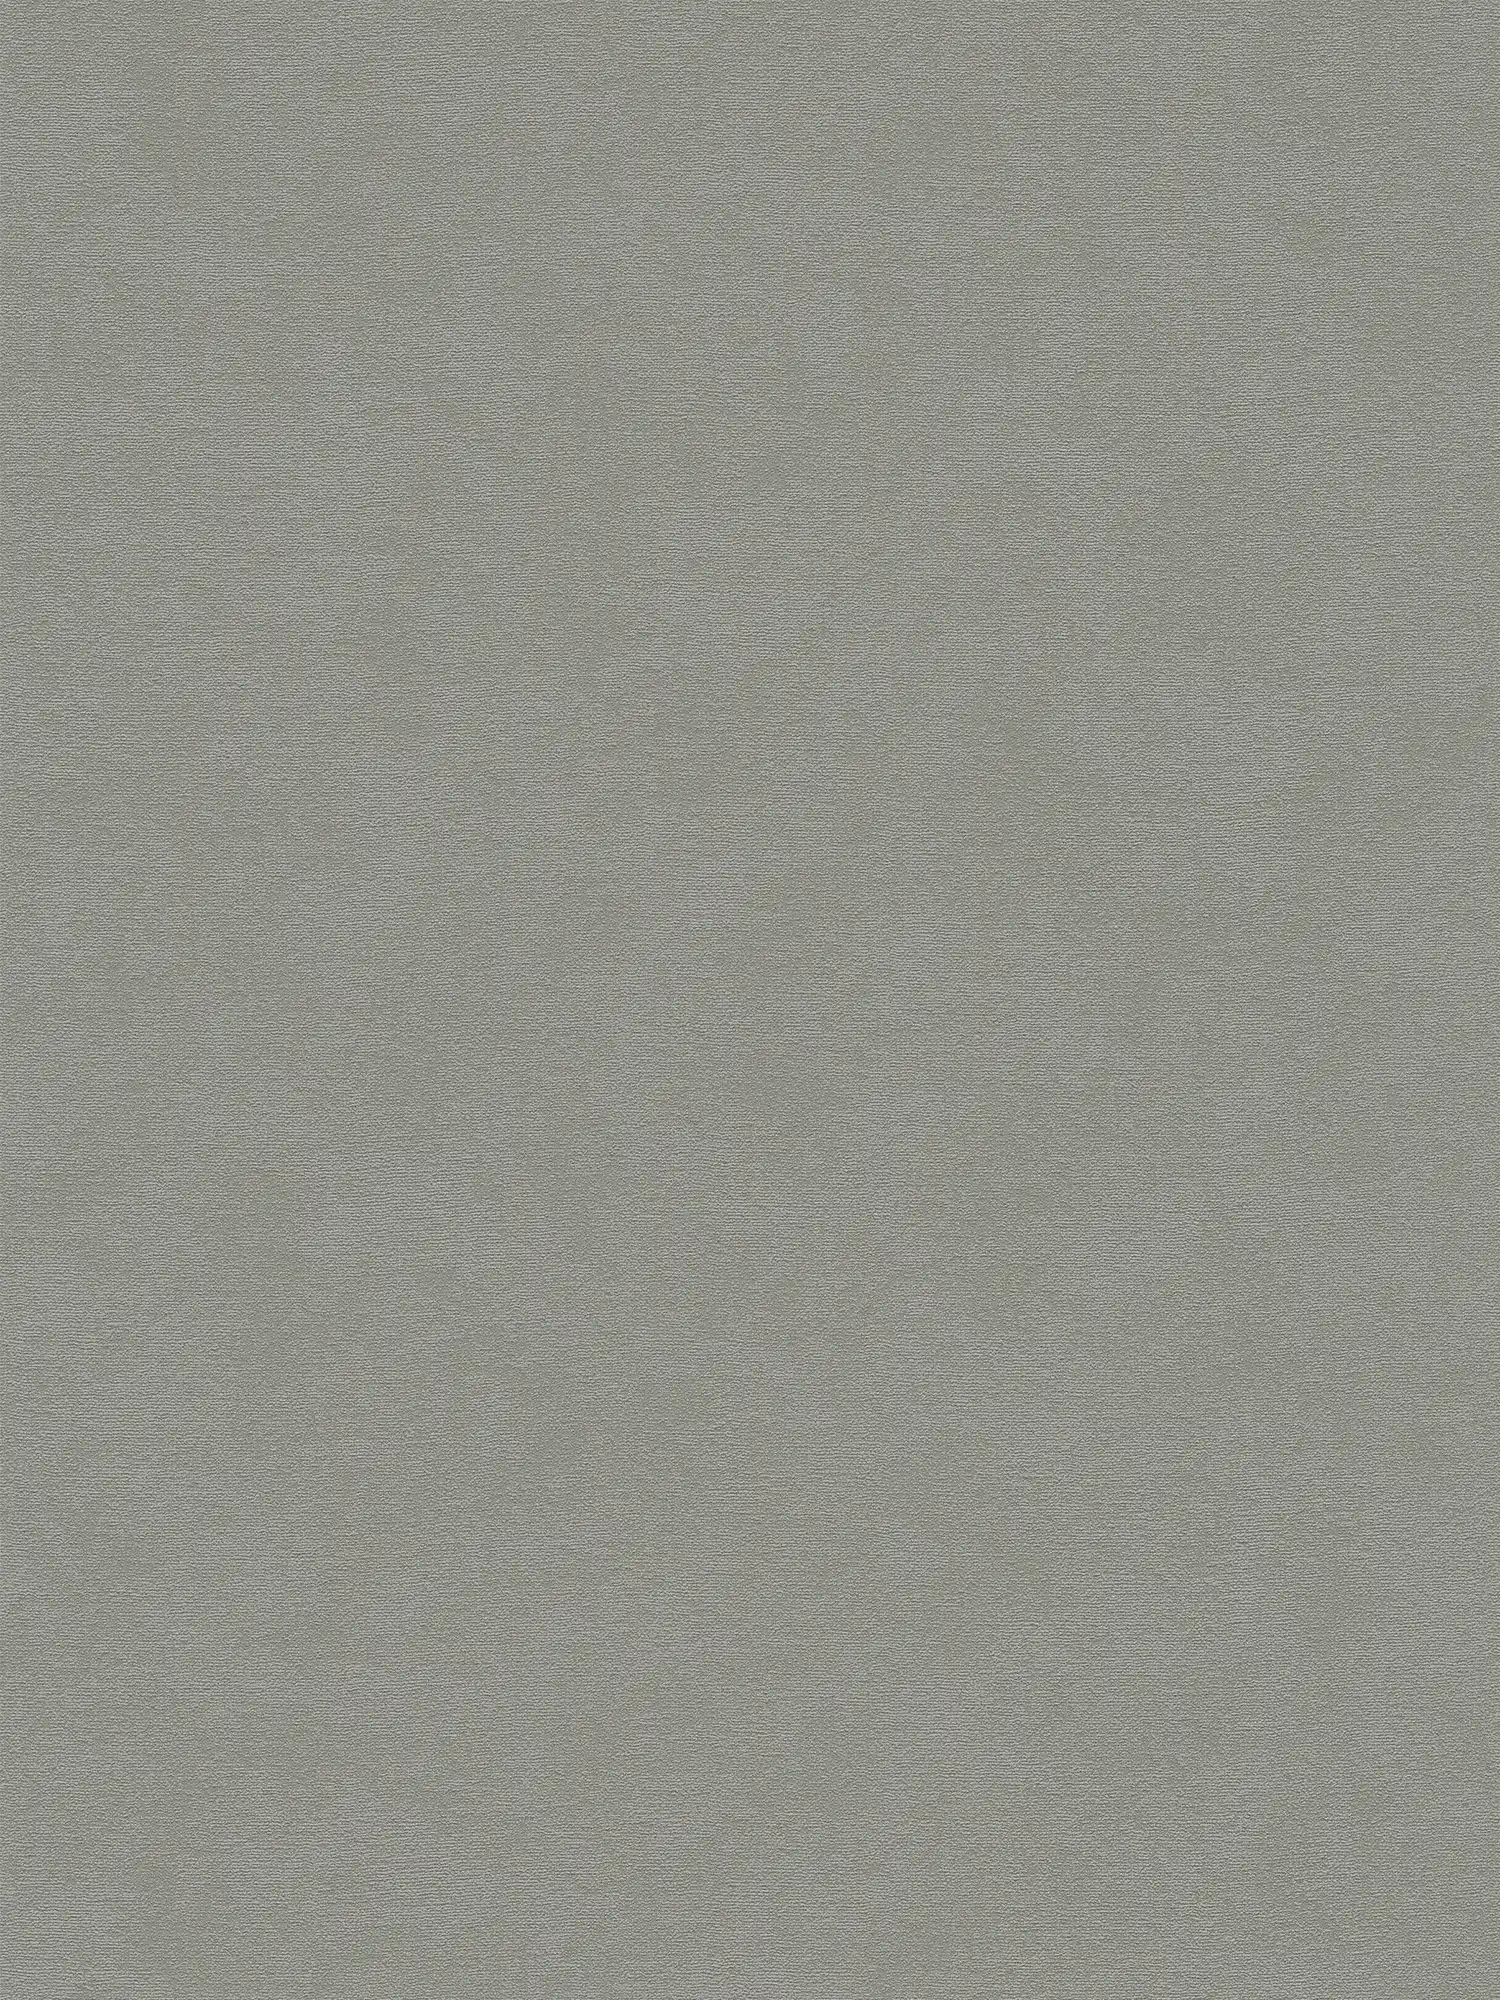 Vliesbehang eenkleurig oppervlak met fijne structuur - grijs
